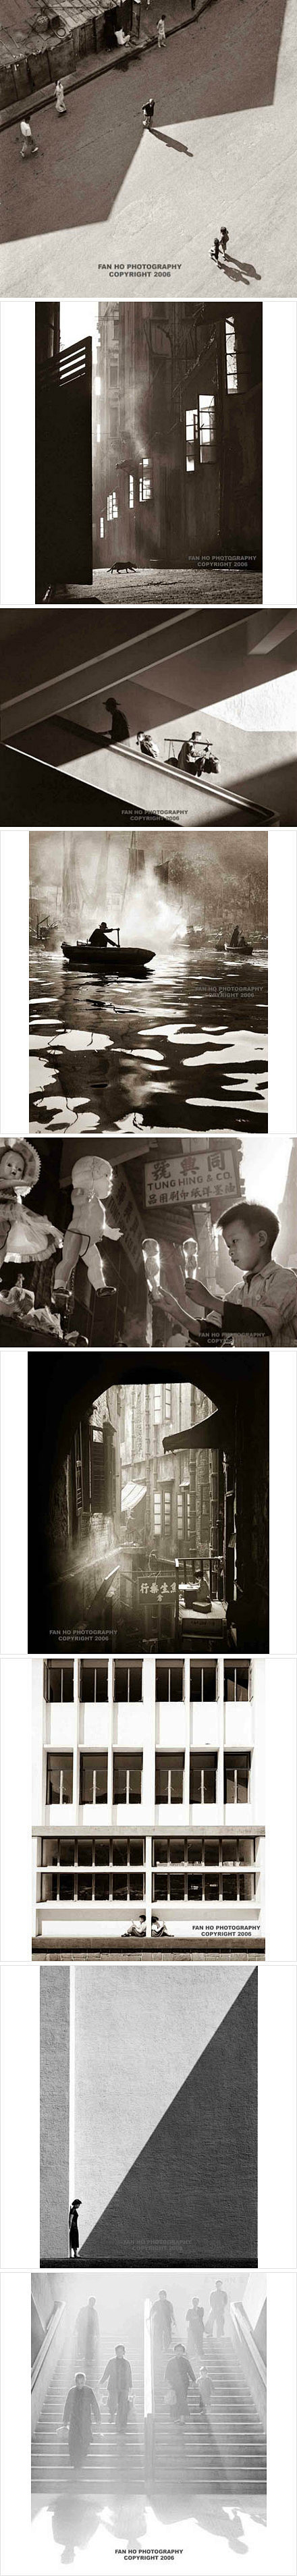 偶然发现何藩在香港的摄影展，无数神构图⋯...